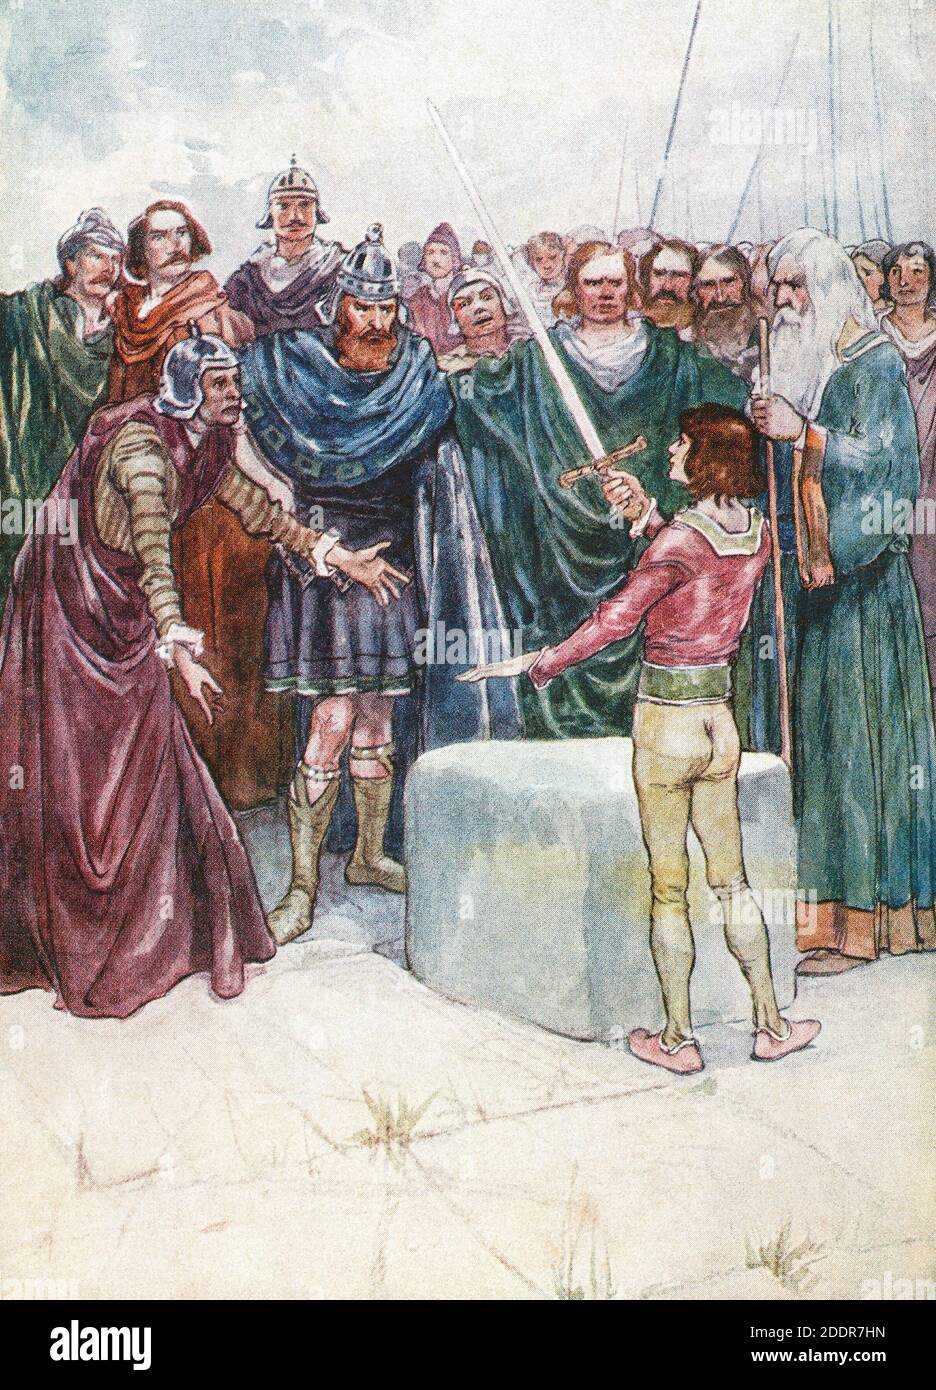 Le jeune Arthur tire l'épée Excalibur de la pierre. Après une illustration de l'artiste du XIXe siècle Archibald Stevenson Forrest. Banque D'Images